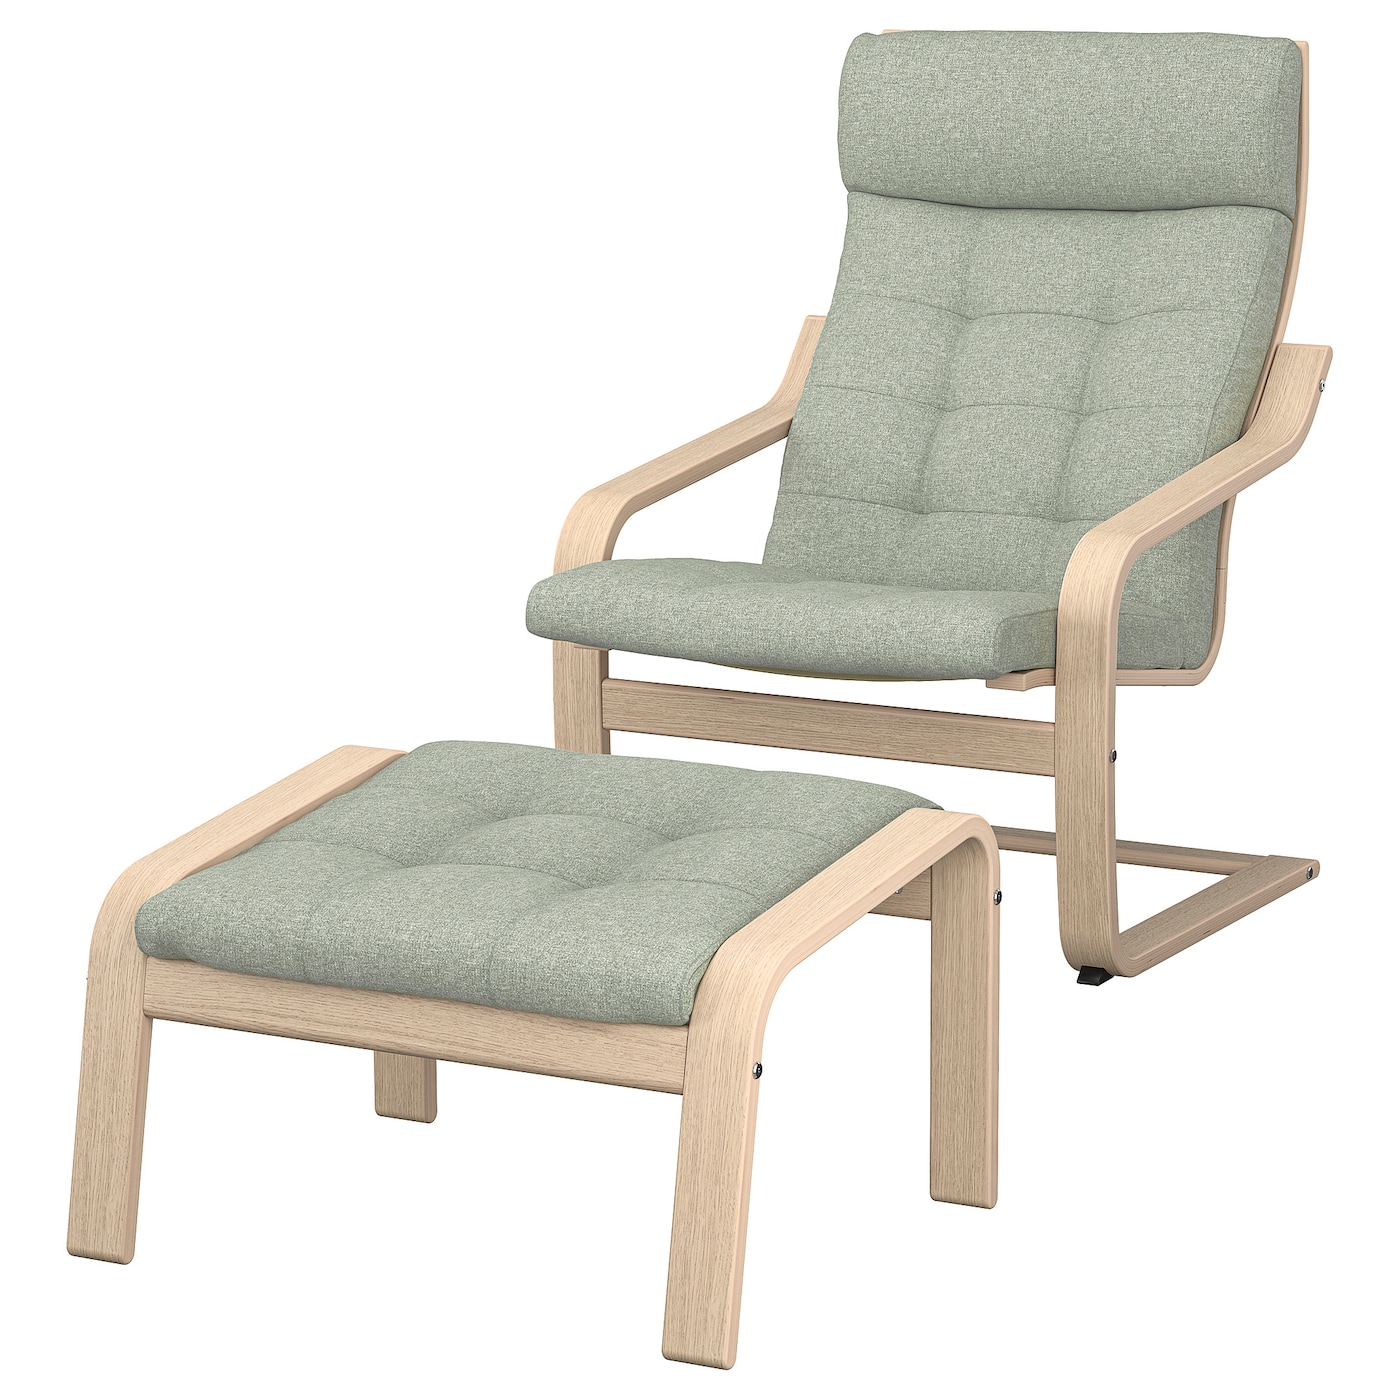 ПОЭНГ Кресло и подставка для ног, дубовый шпон светлый/Гуннаред светло-зеленый POÄNG IKEA